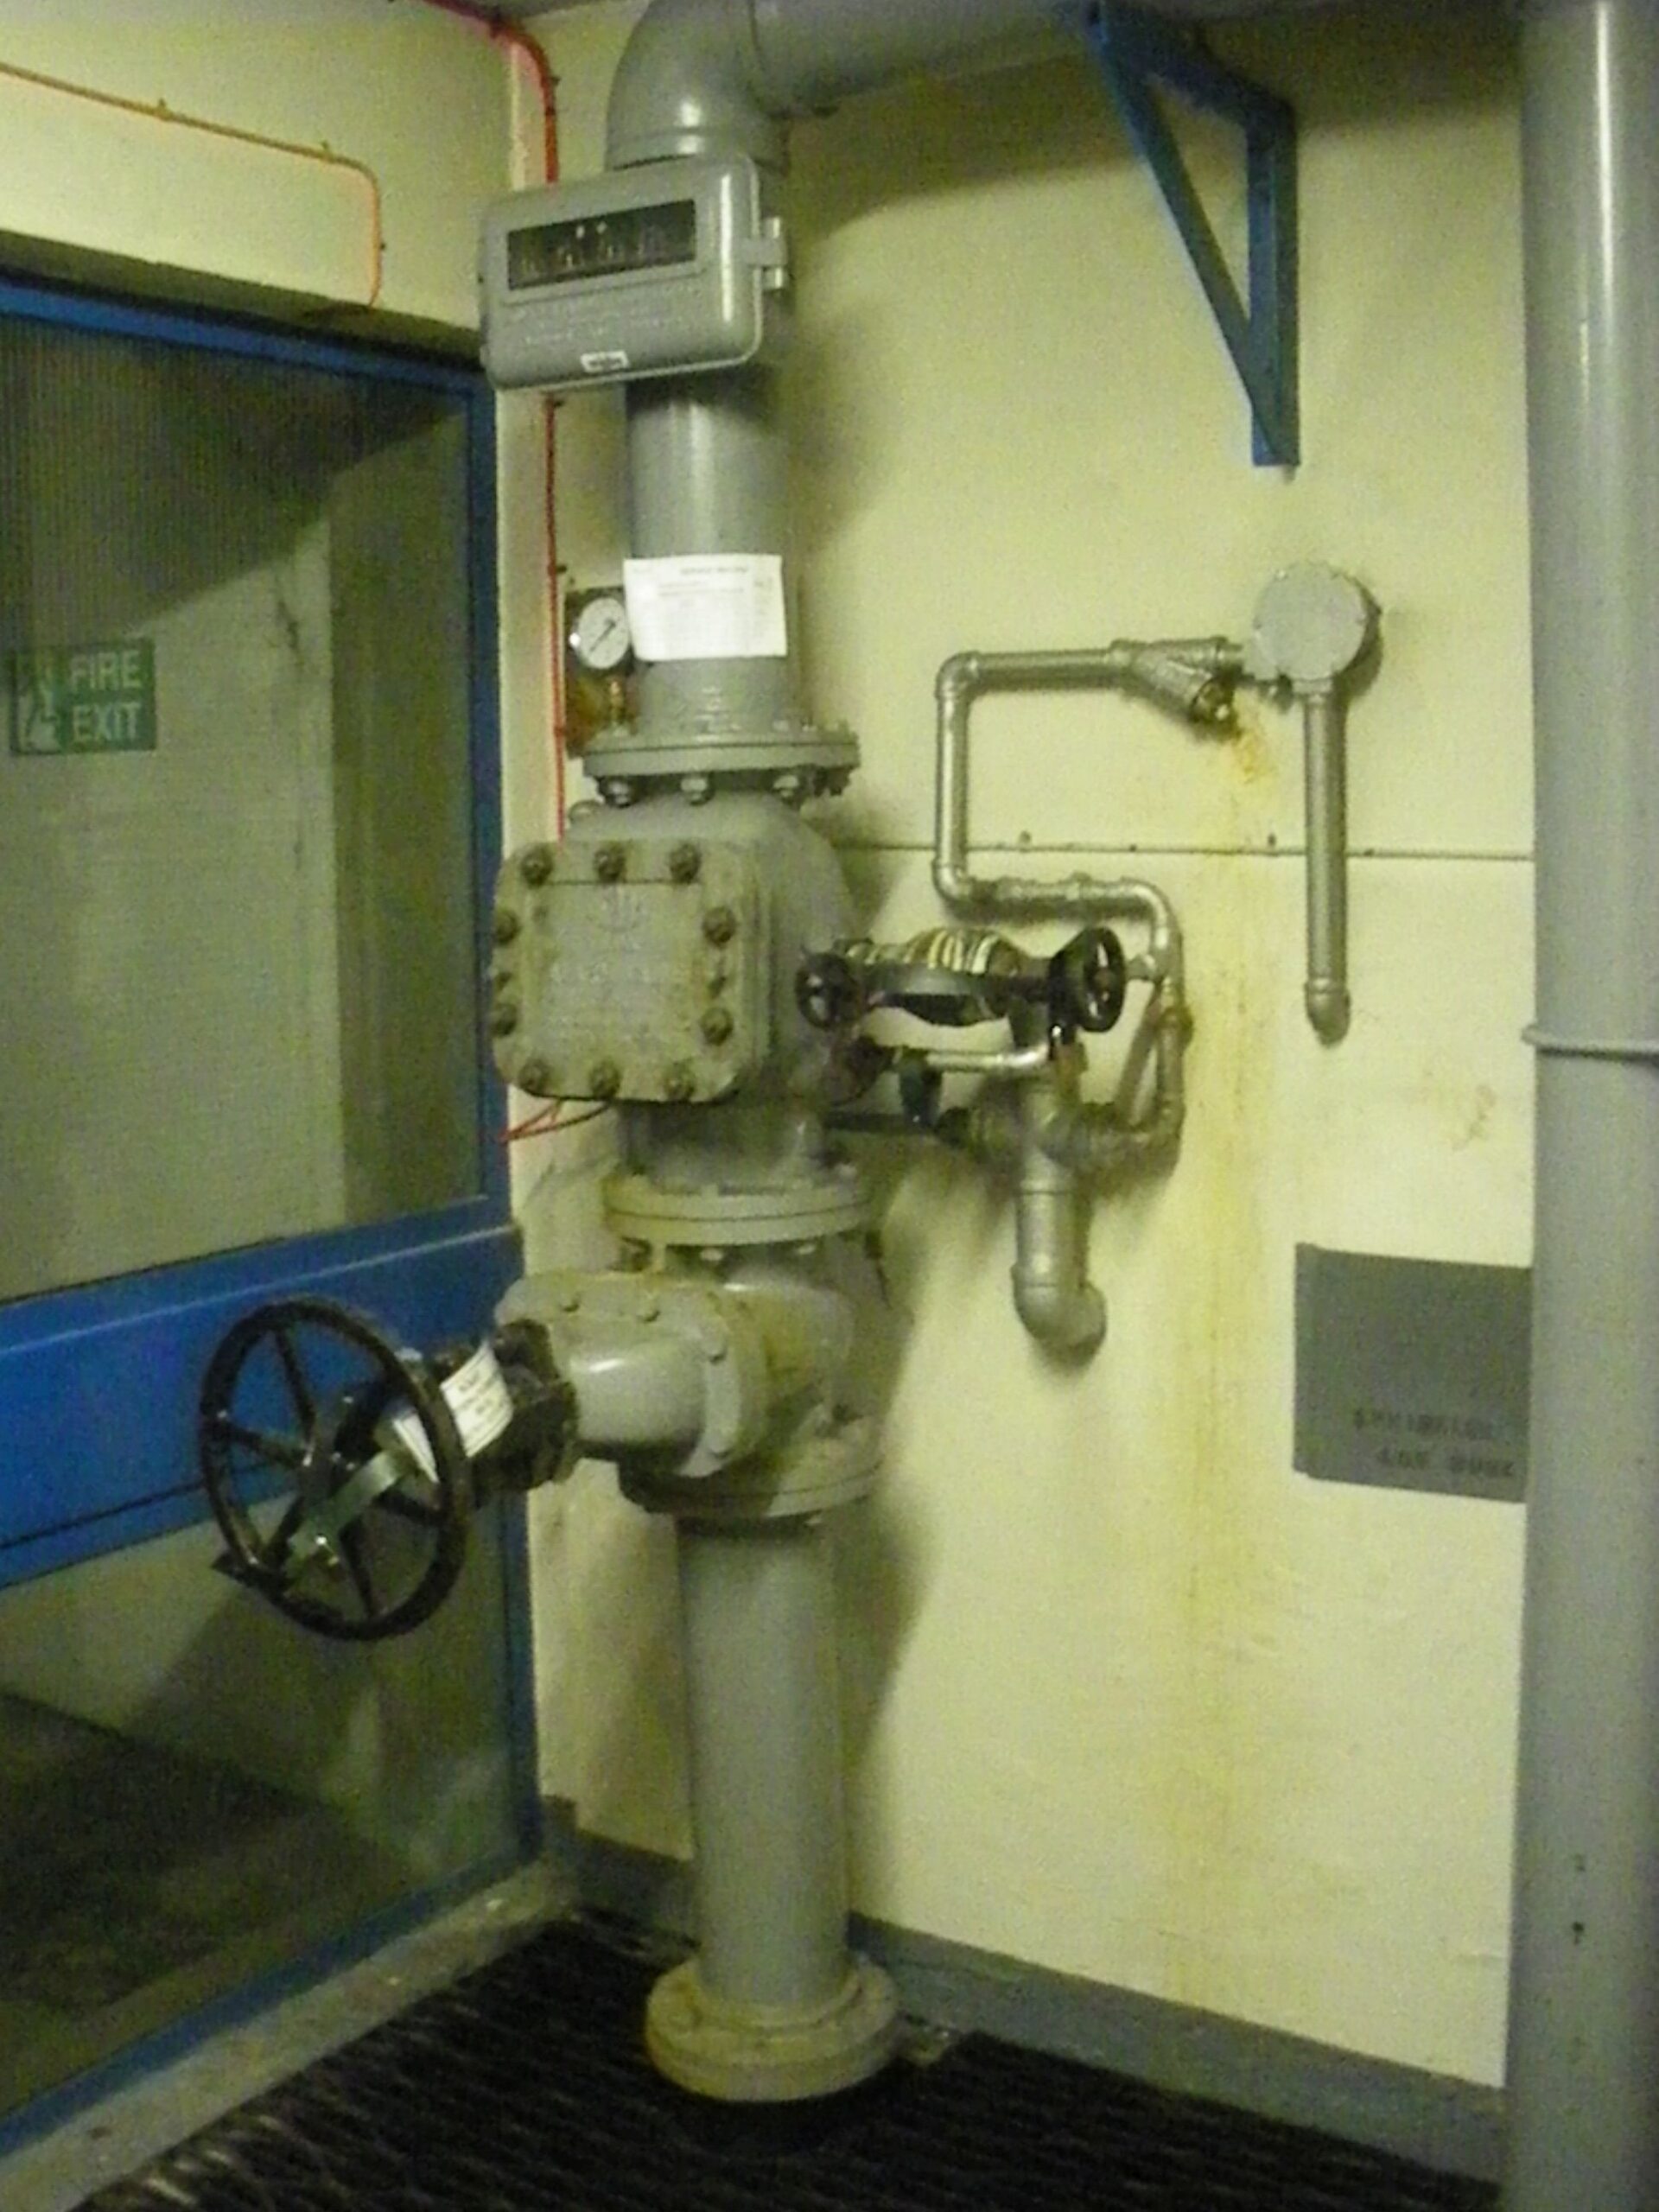 Sprinkler strop valve by Refrigeration Plant, 13 Sep 2011